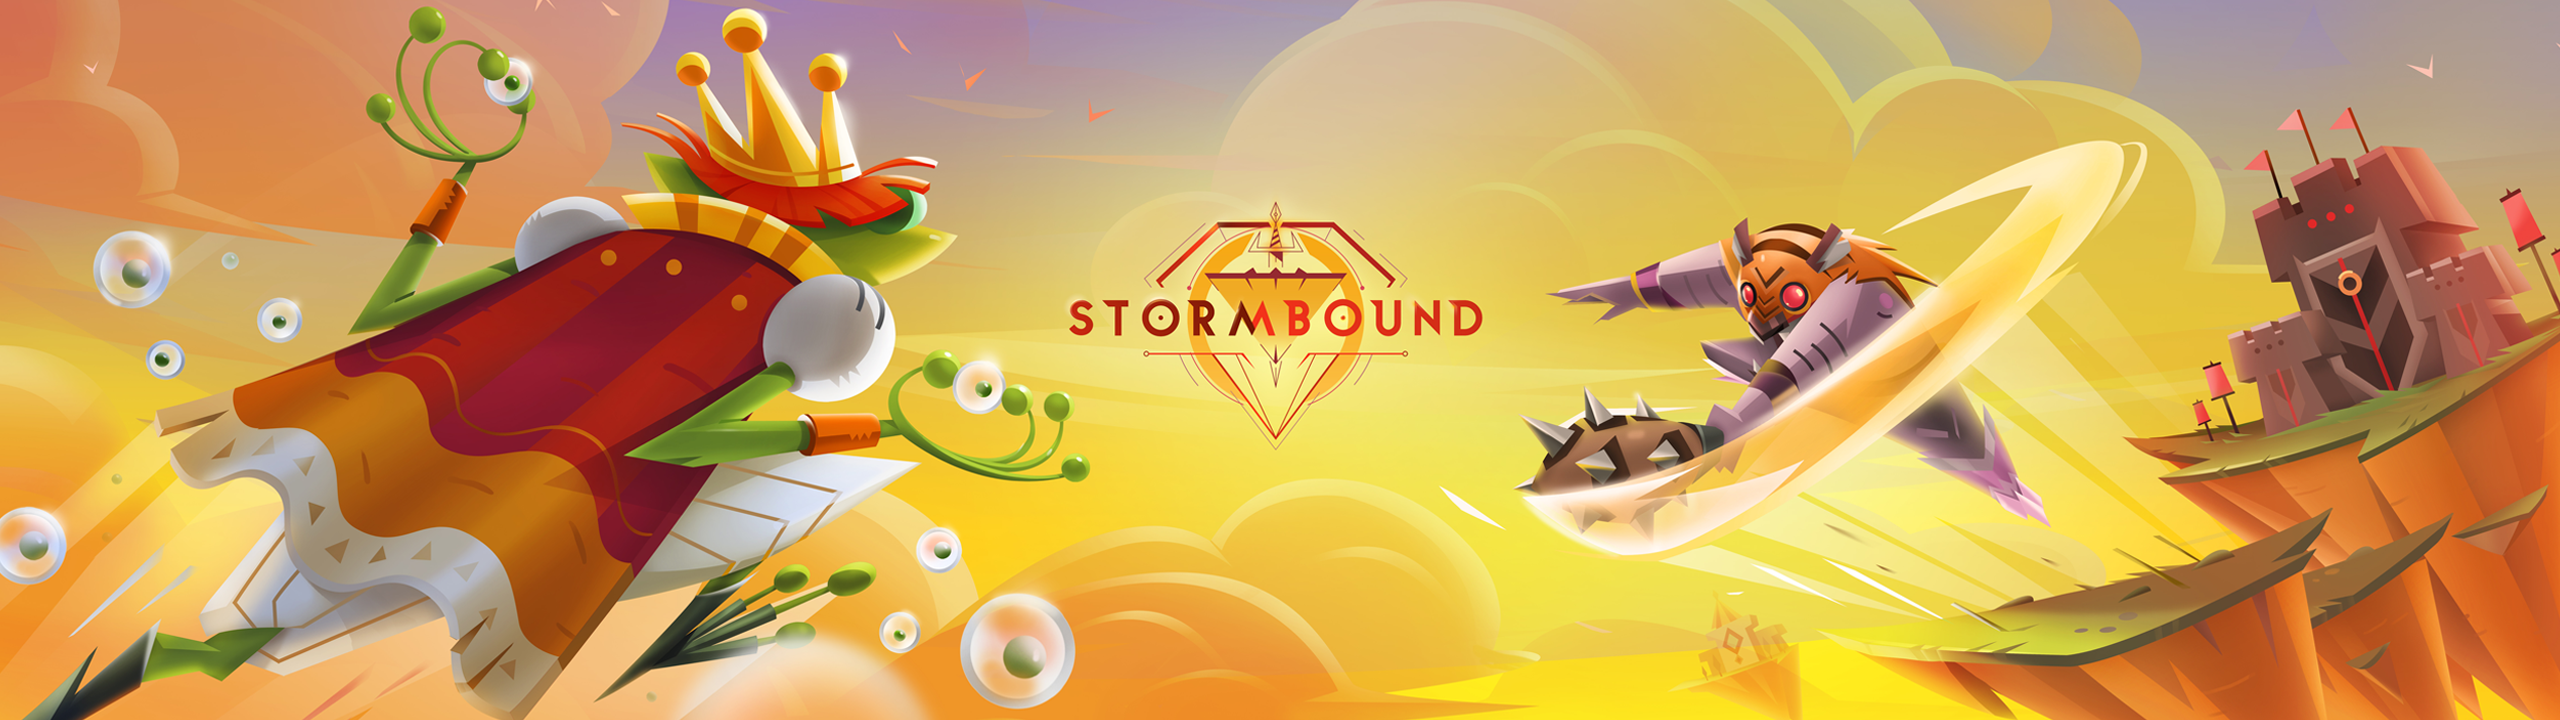 Stormbound2